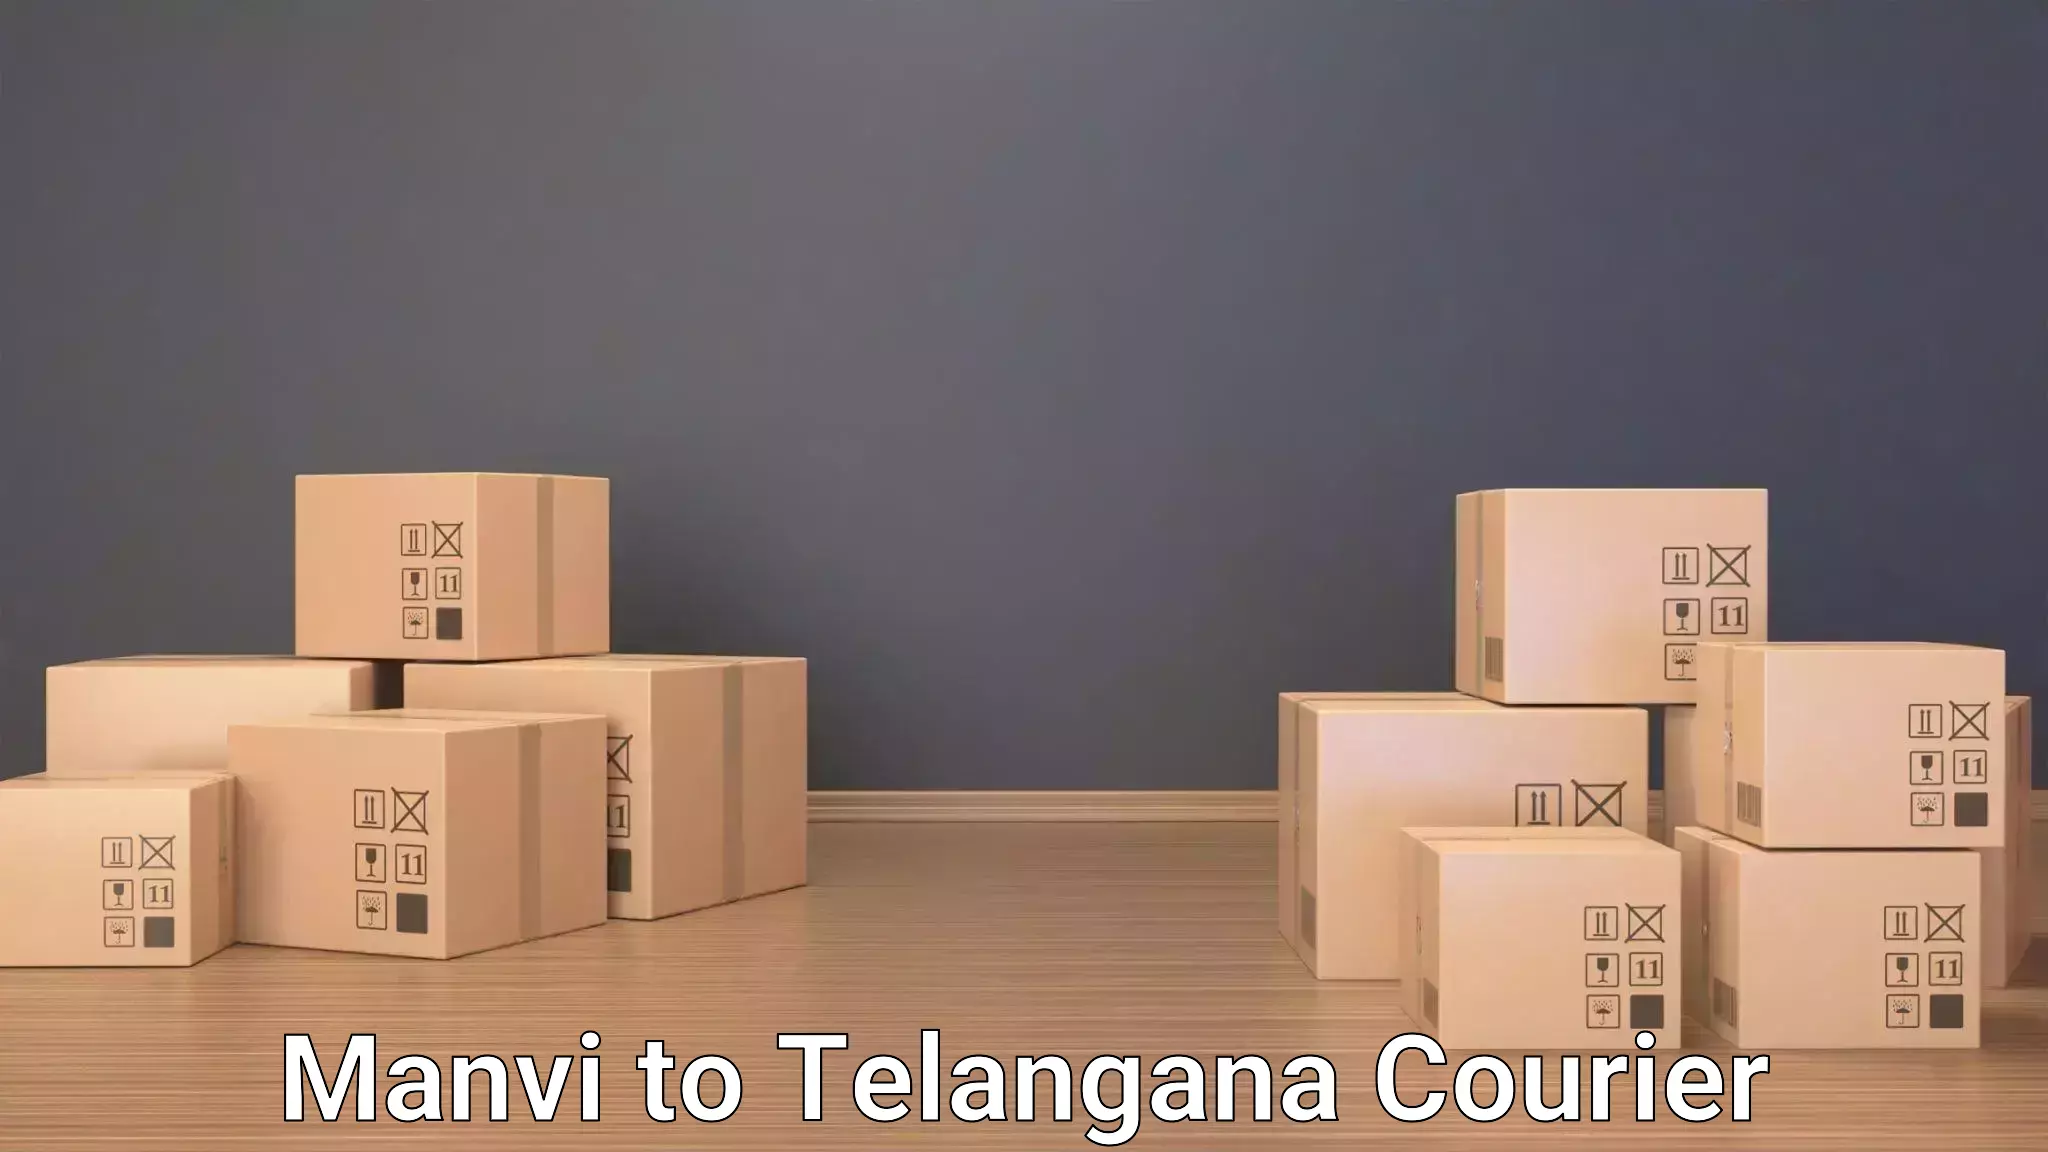 Luggage delivery estimate Manvi to Tadvai